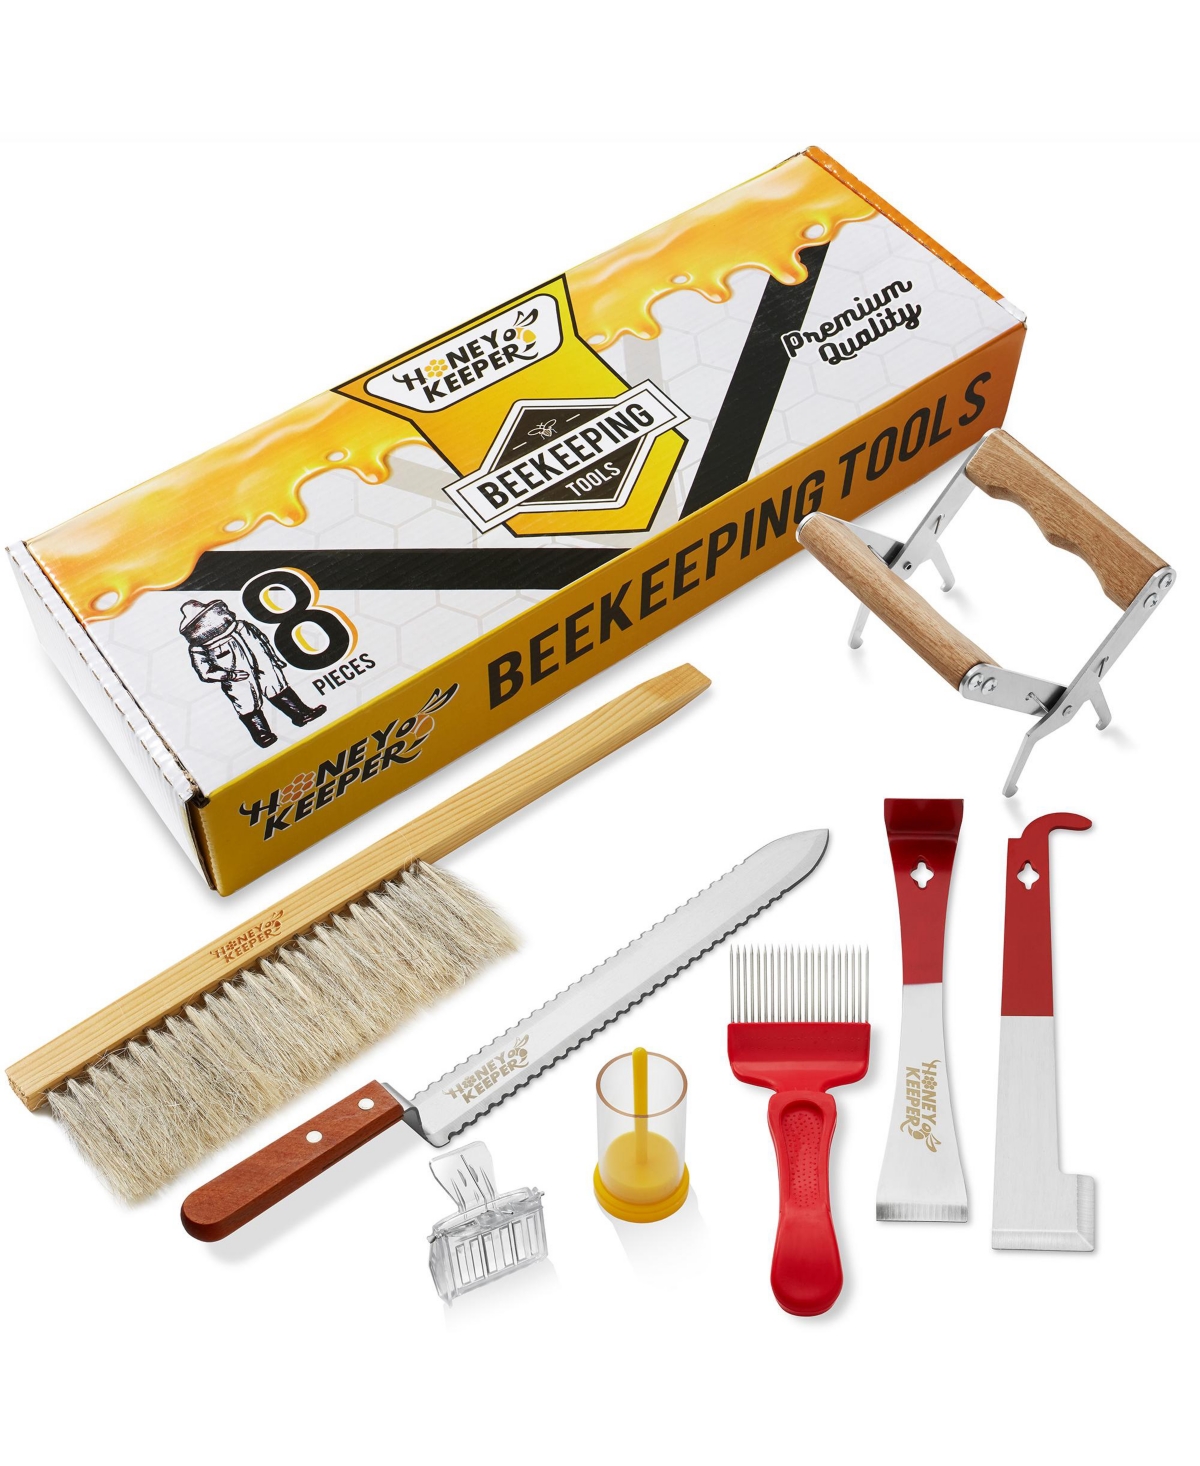 8-Piece Beekeeping Tool Kit - Essential Starter Supplies for Beginner Beekeepers - Assorted Pre-Pack